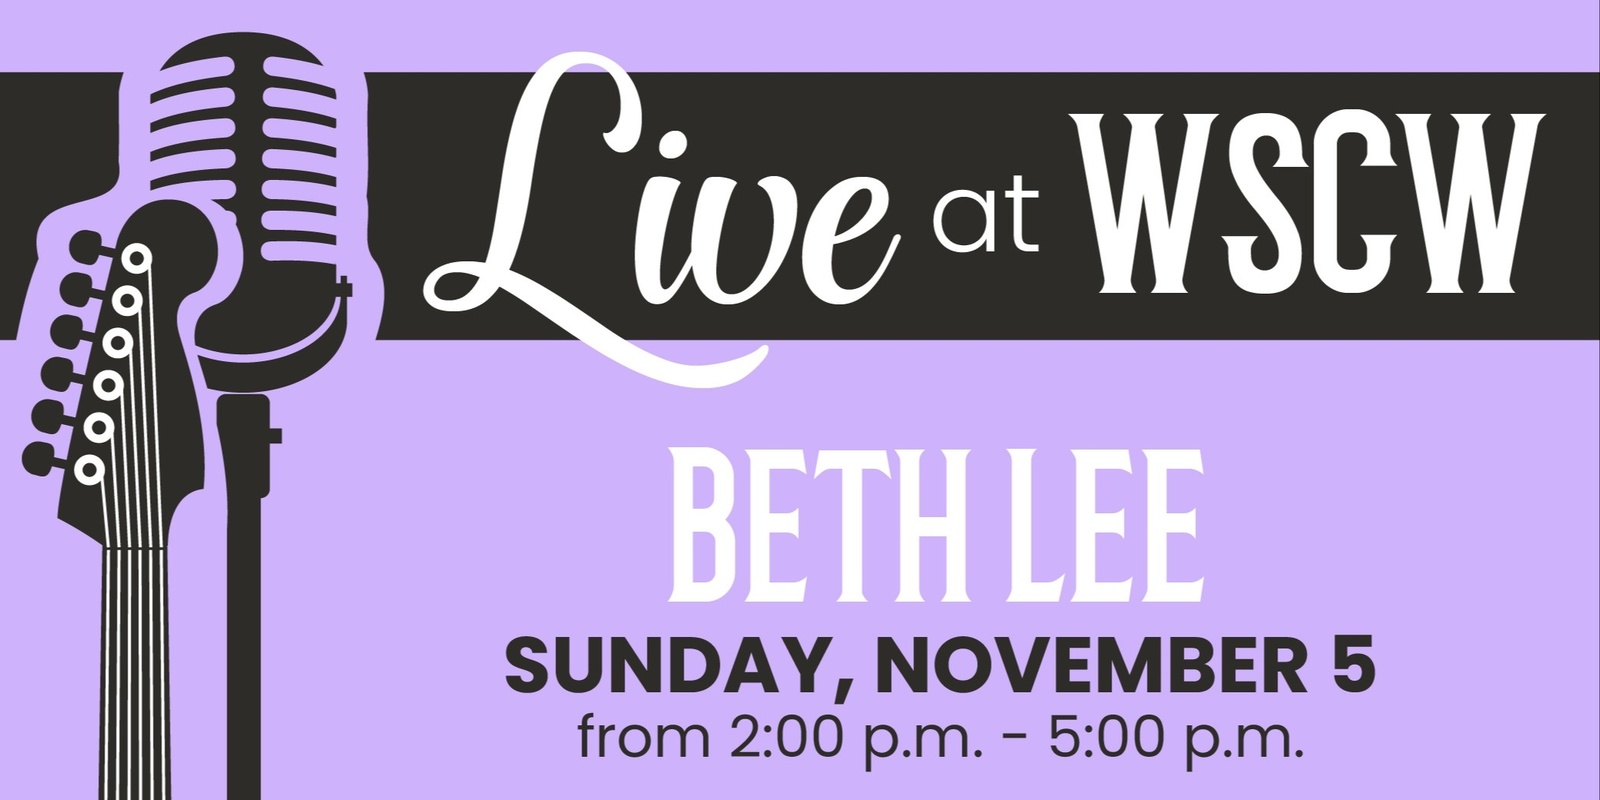 Banner image for Beth Lee Live at WSCW November 5